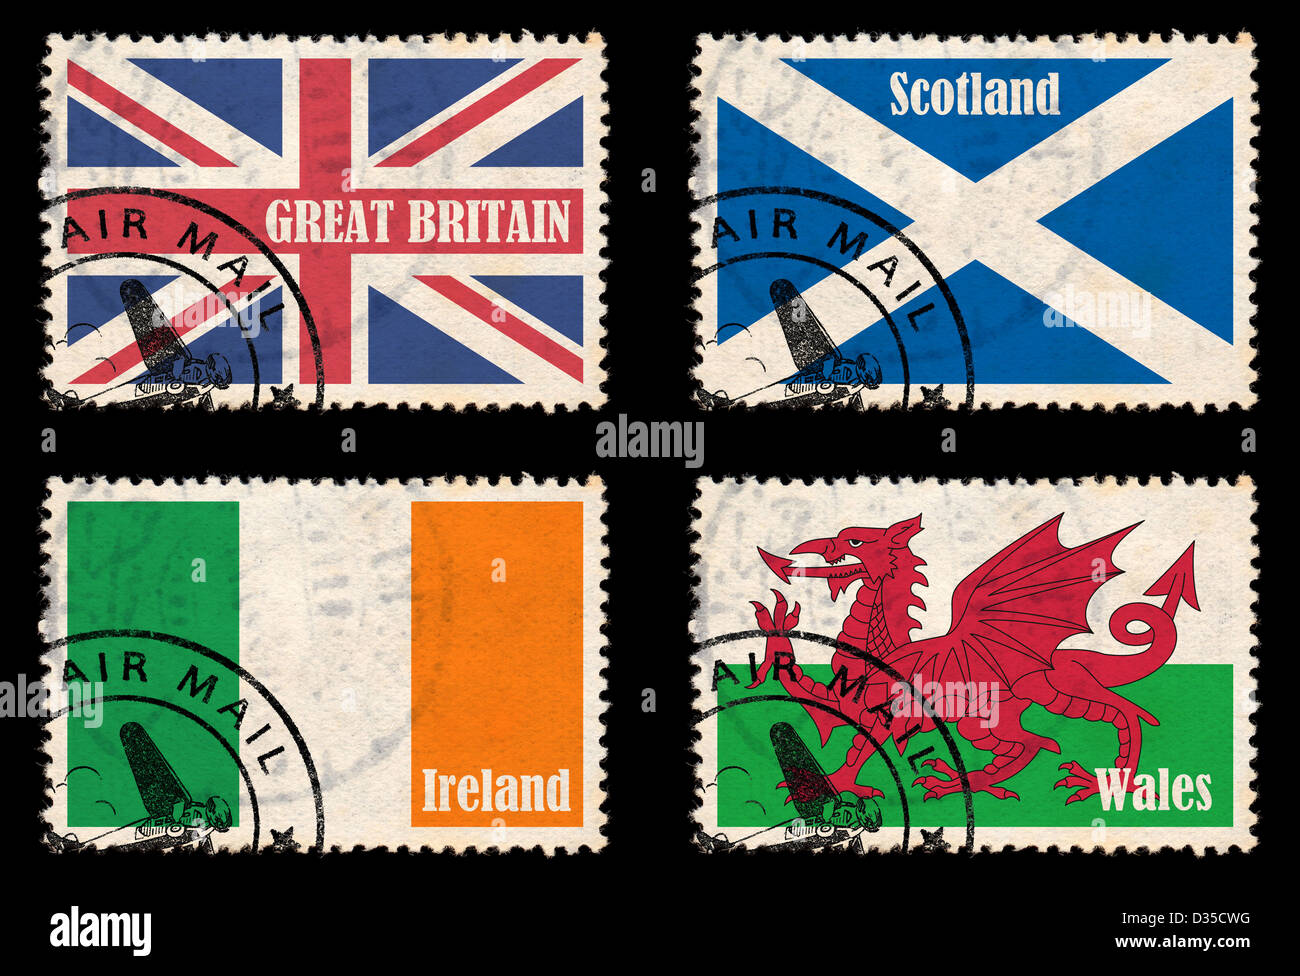 Serie di francobolli con bandiere provenienti dalle isole britanniche (Gran Bretagna, Irlanda, Scozia e Galles) Foto Stock